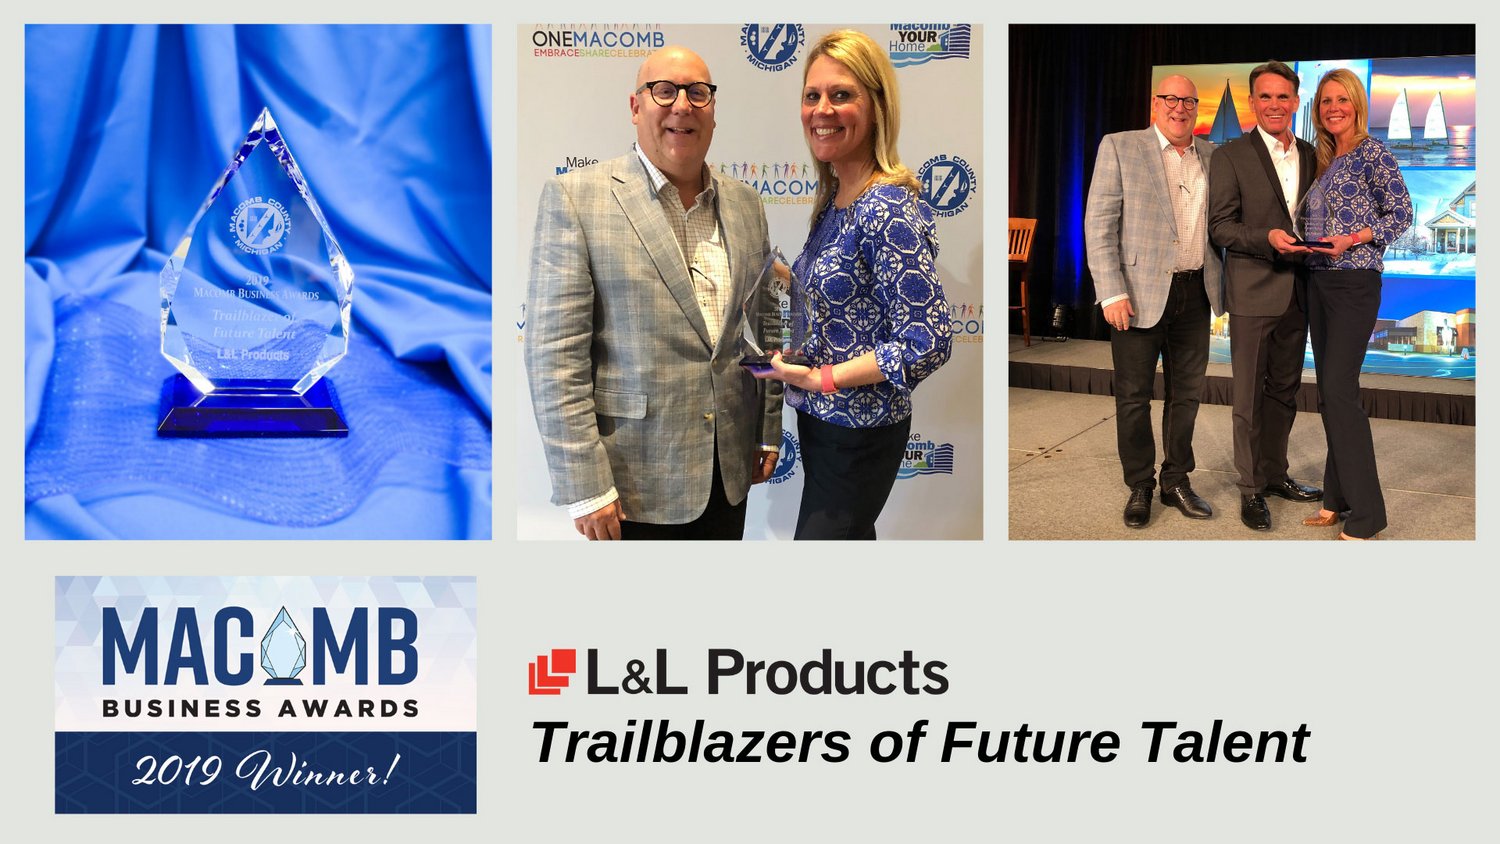 Produkty L&L získaly cenu Macomb Business Award pro průkopníky budoucích talentů